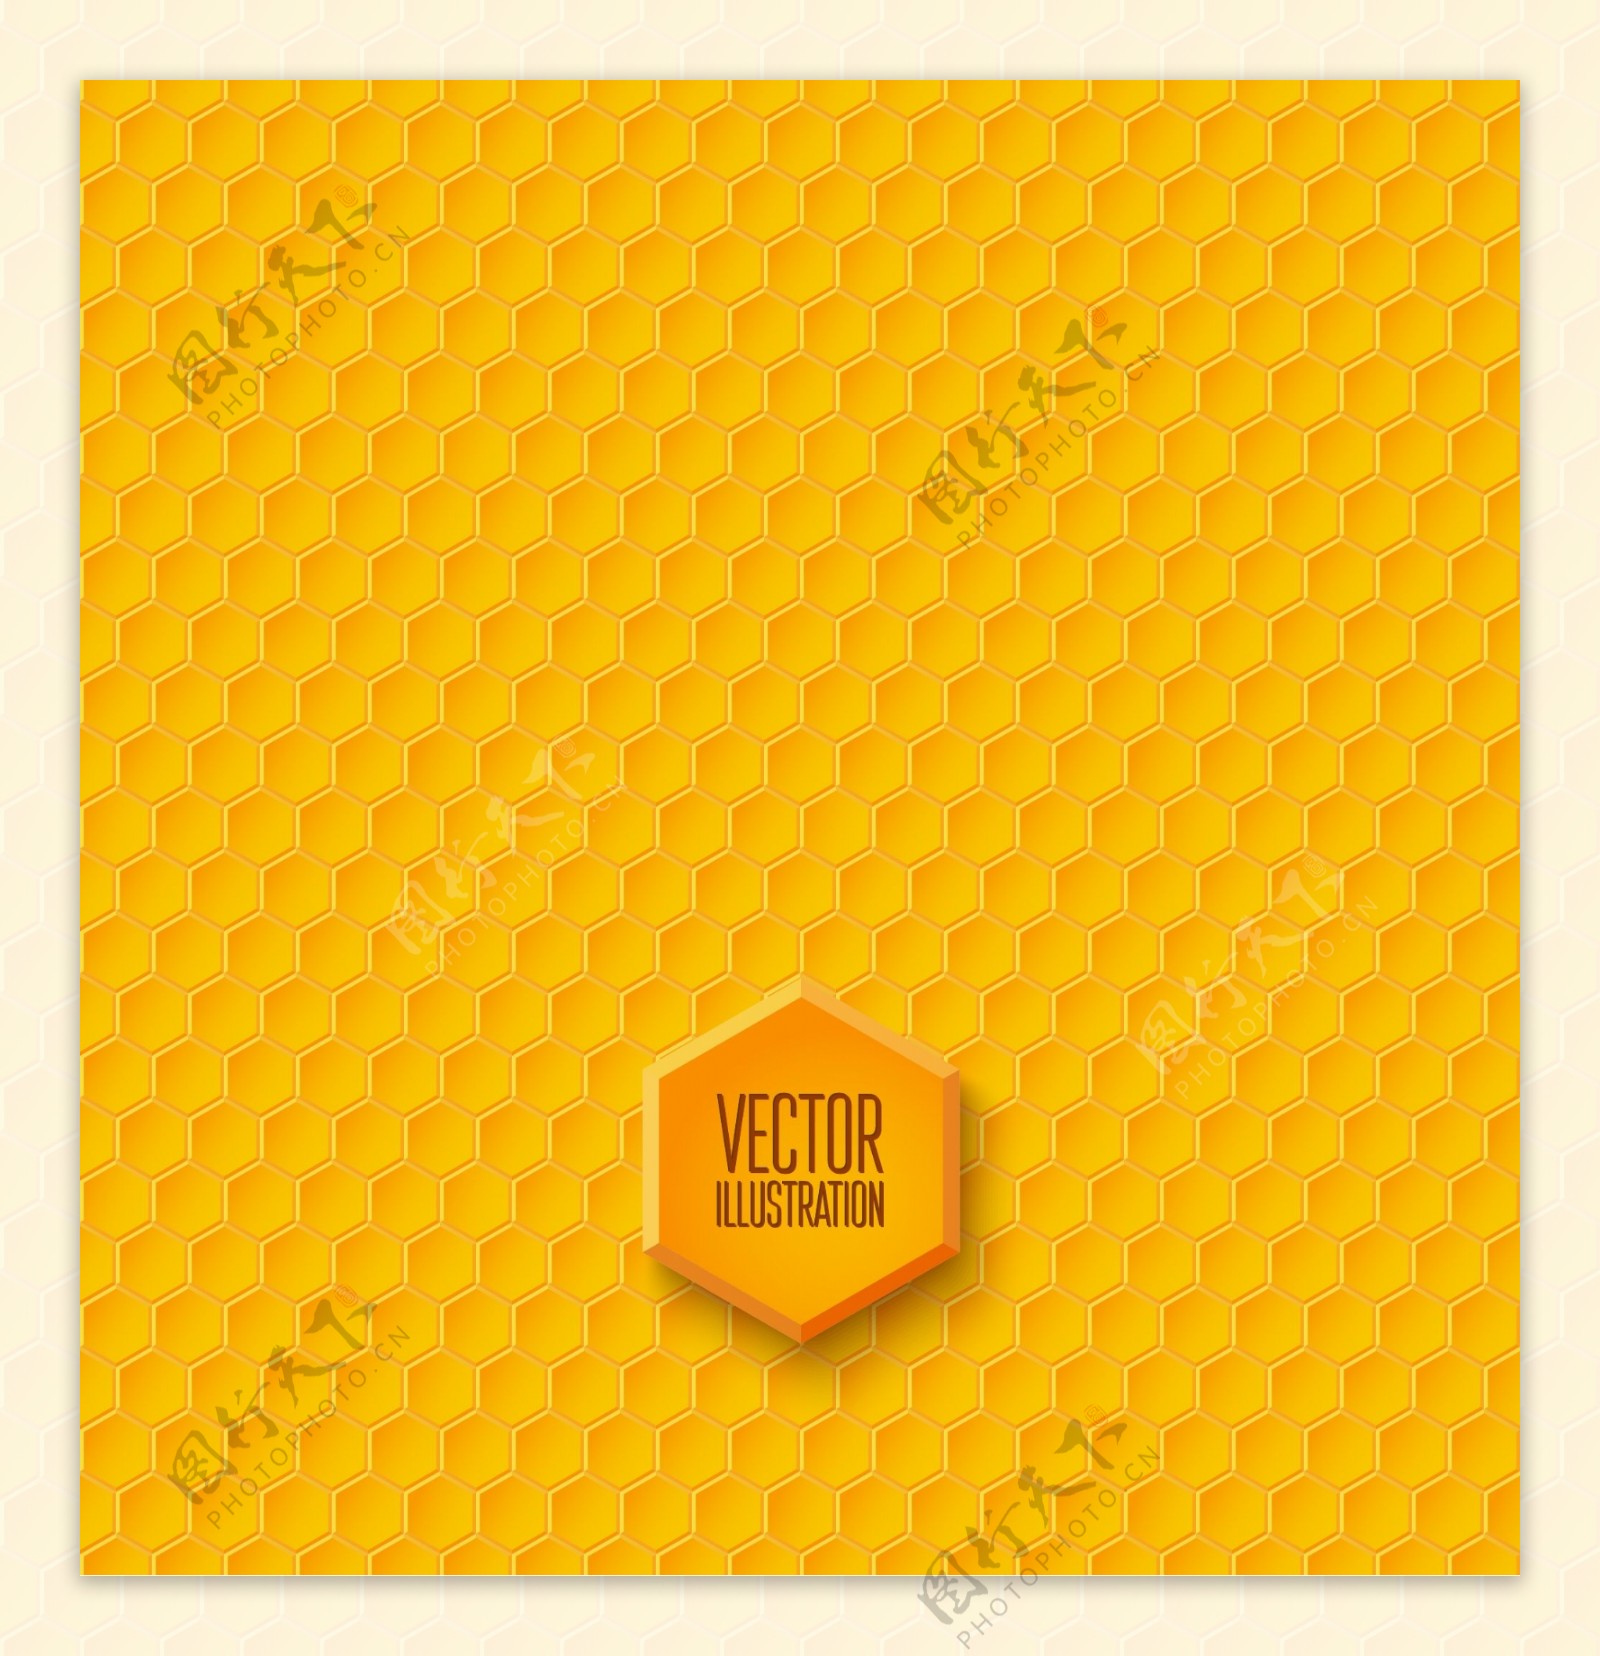 黄色蜂窝形无缝背景矢量素材